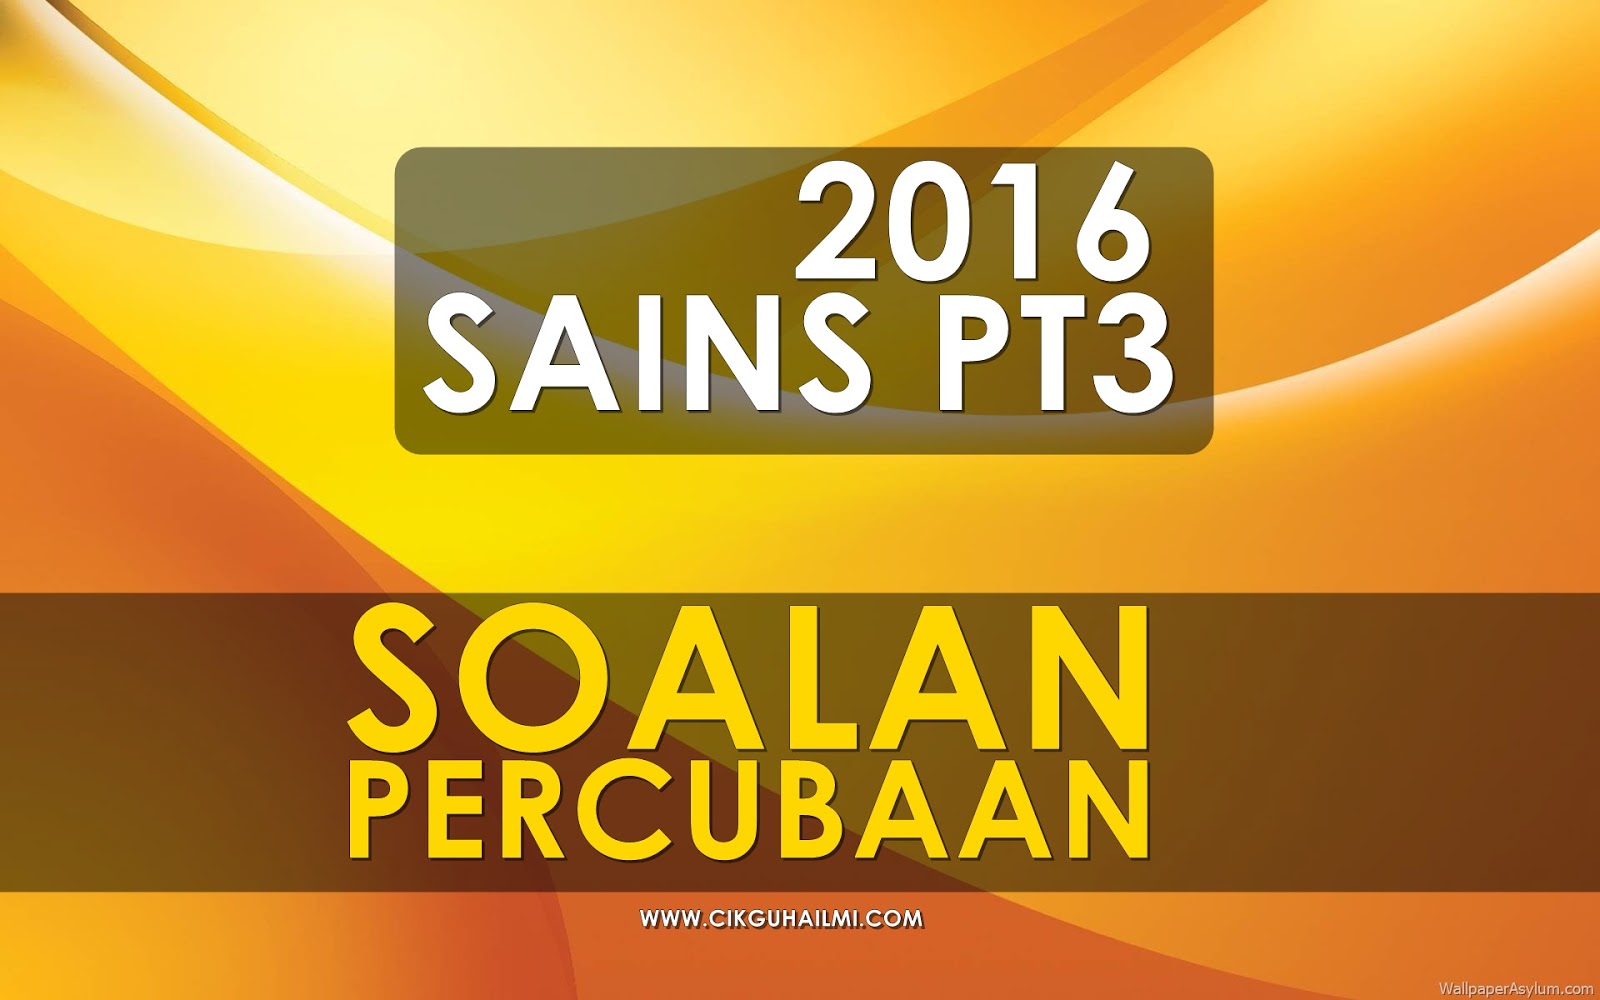 Koleksi Soalan Percubaan Sains PT3 2016